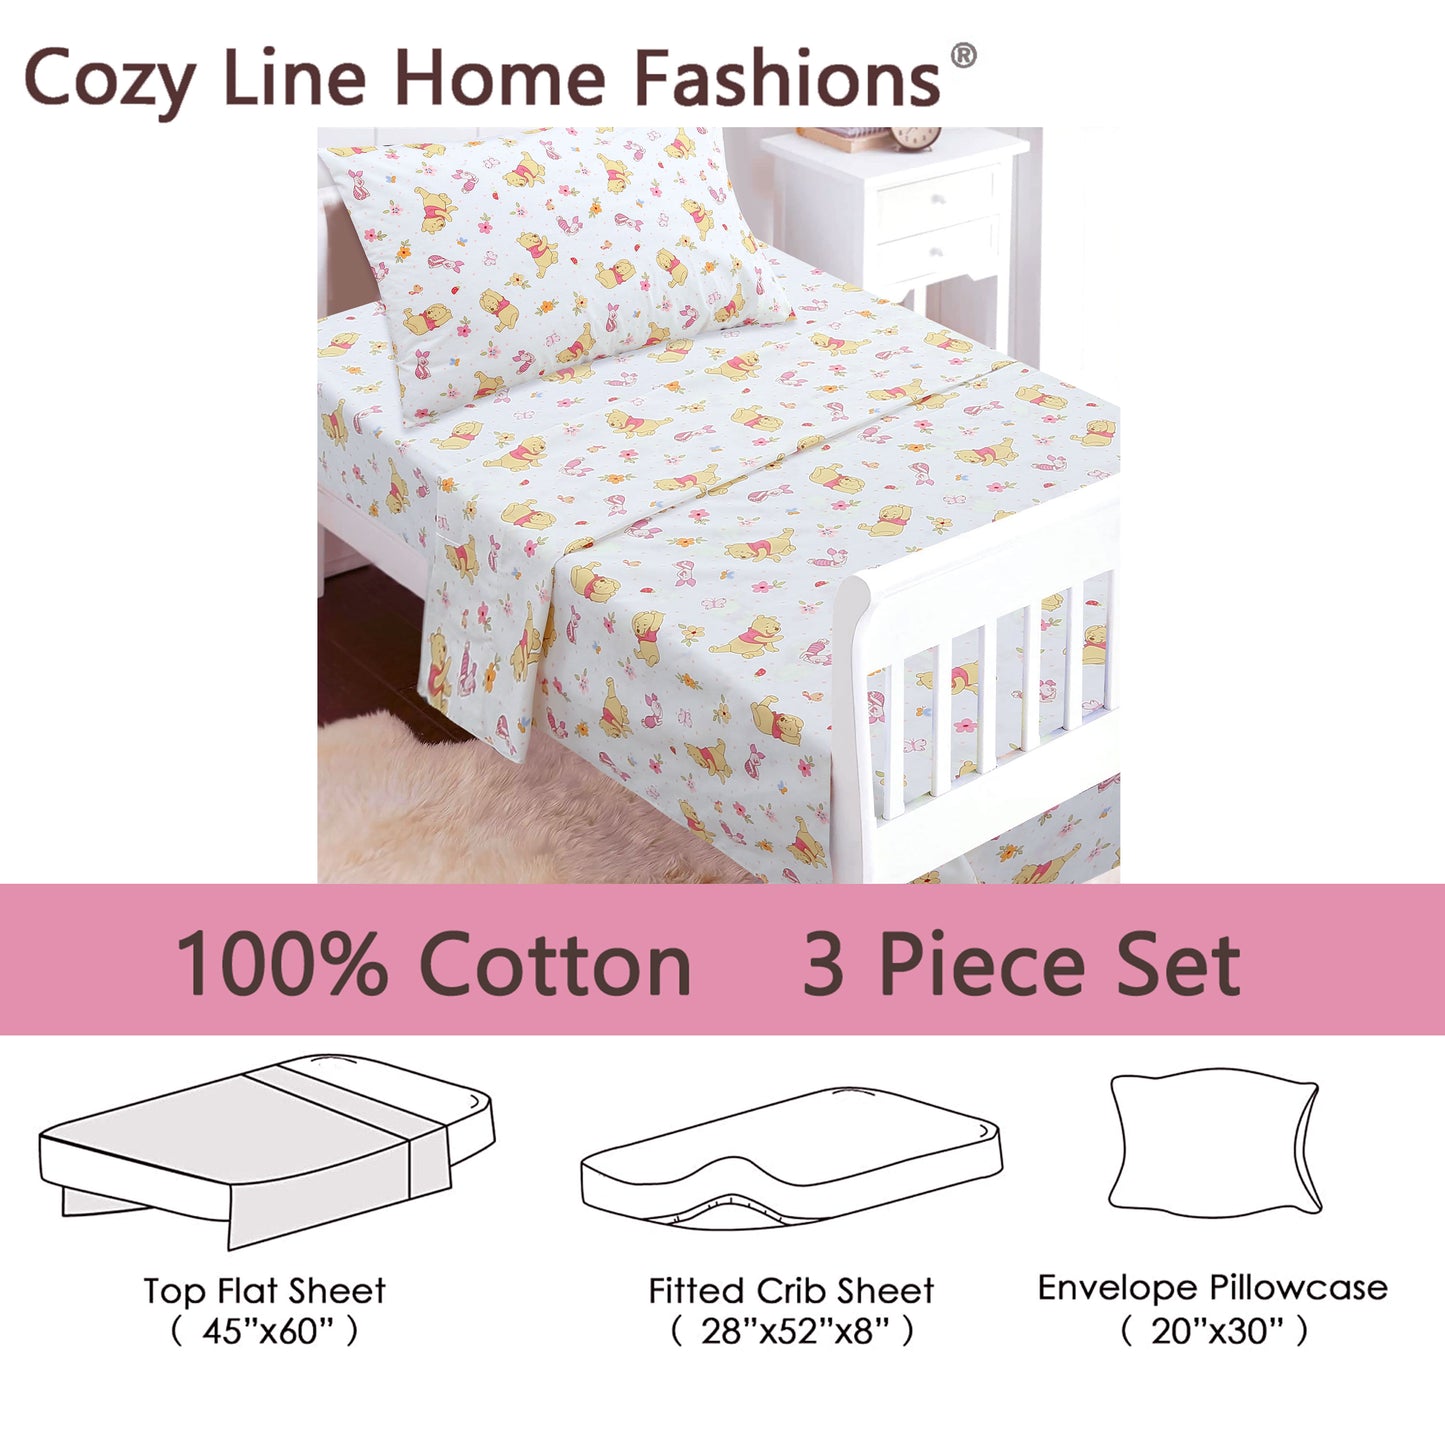 3-Piece Crib/Toddler Cotton Sheet Set Pink Piglet & Pooh Floral Garden